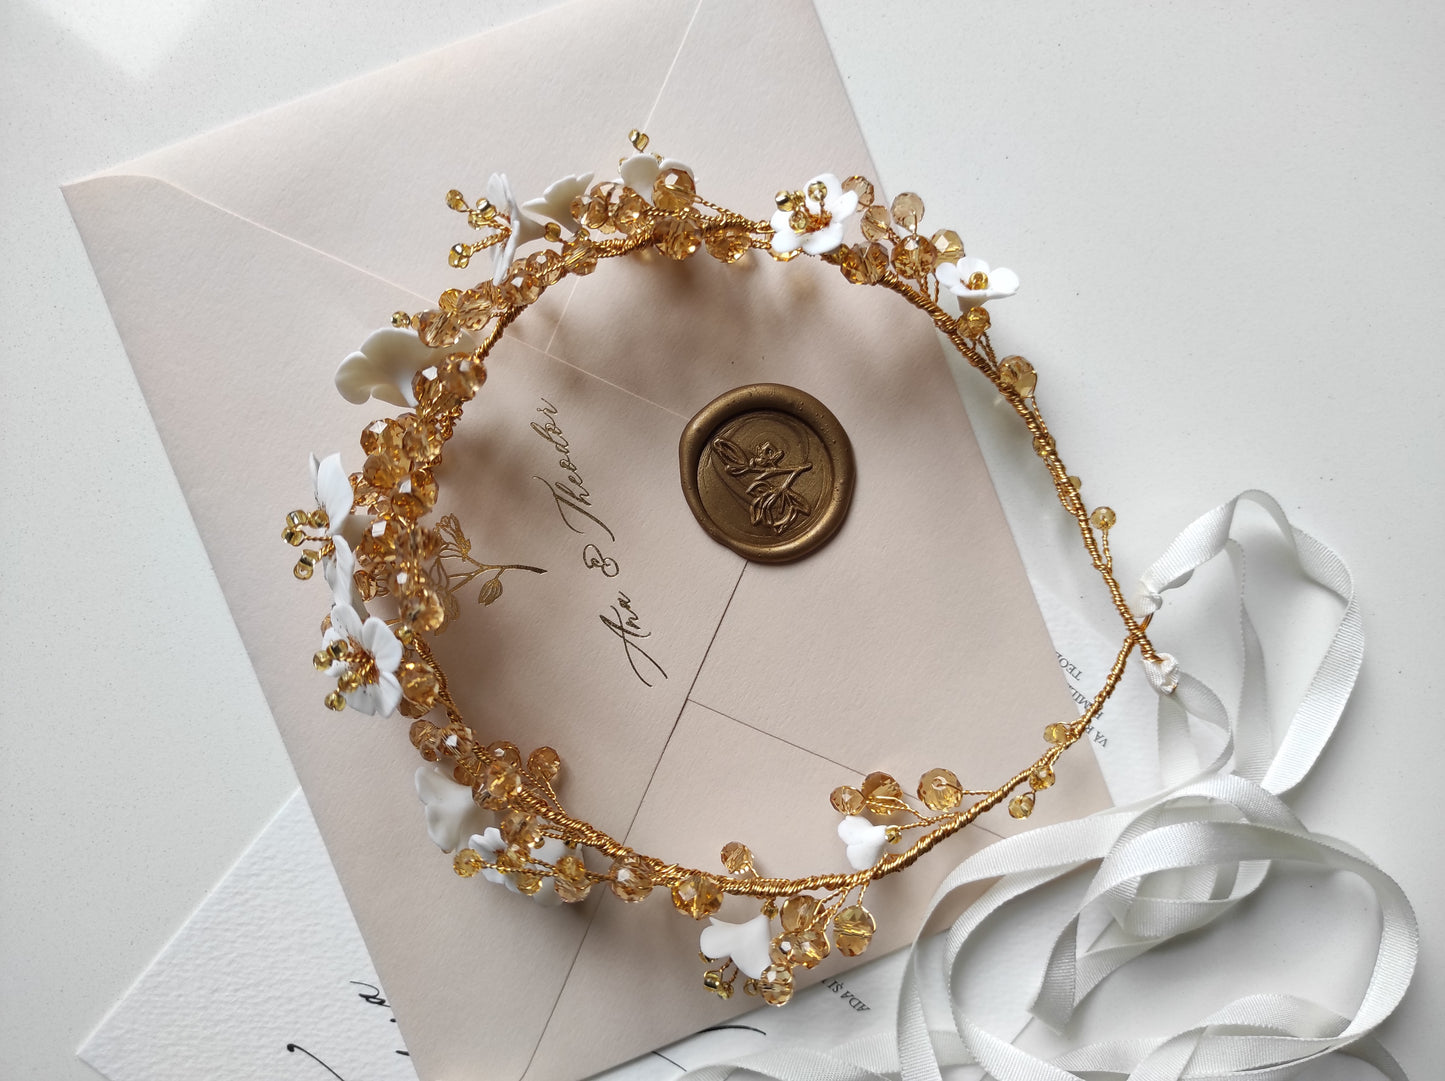 GOLD RUSH Hair vine || Luxury bridal hair vine - Handmade hair jewelry - Wedding head piece - Hair adornment - Bridal crown